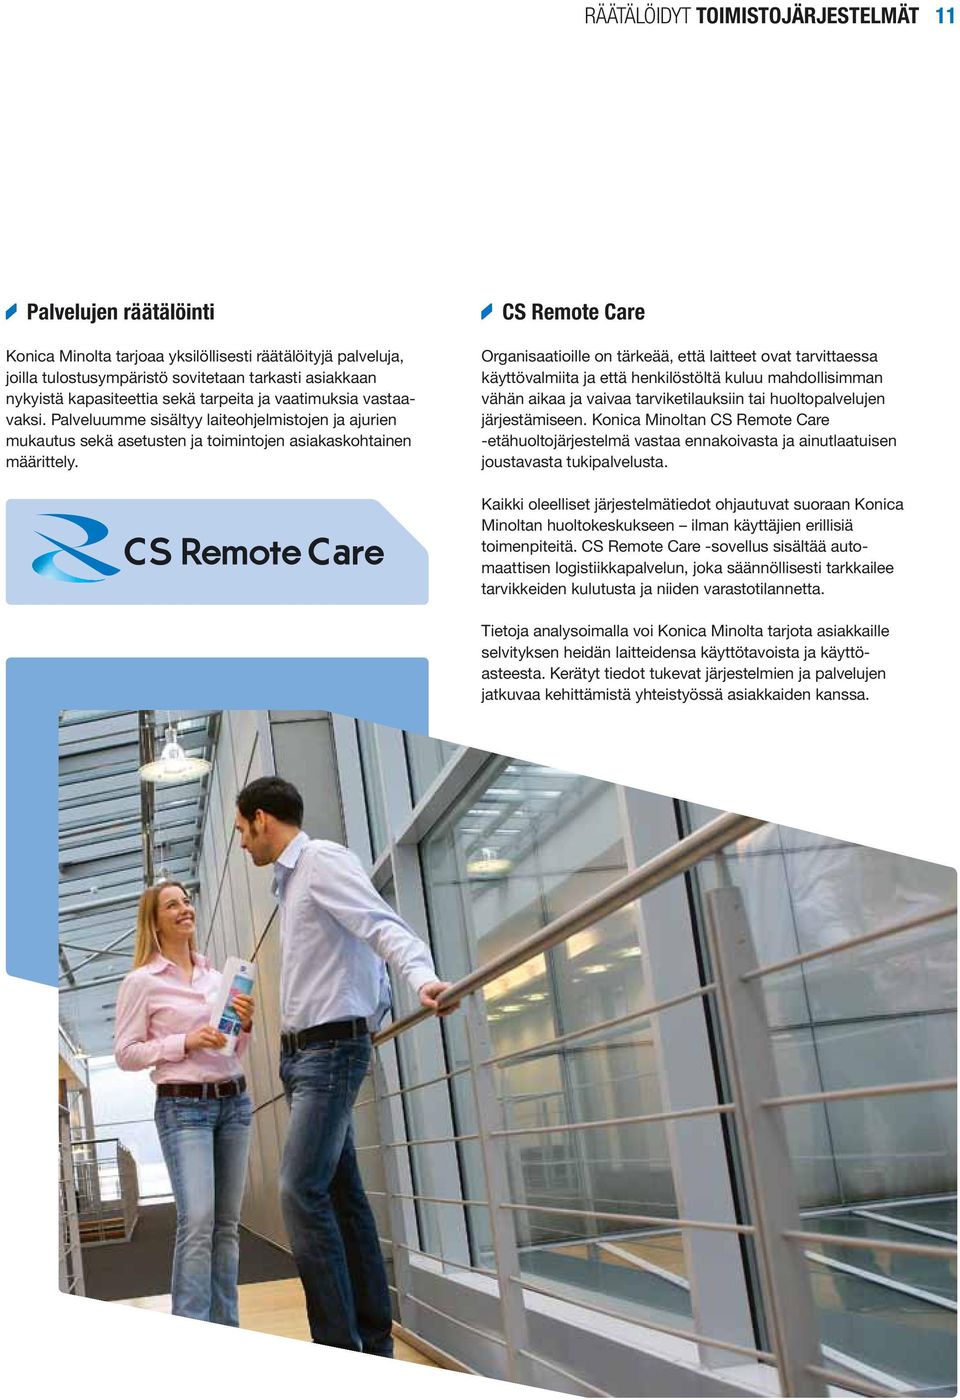 CS Remote Care Organisaatioille on tärkeää, että laitteet ovat tarvittaessa käyttövalmiita ja että henkilöstöltä kuluu mahdollisimman vähän aikaa ja vaivaa tarviketilauksiin tai huoltopalvelujen